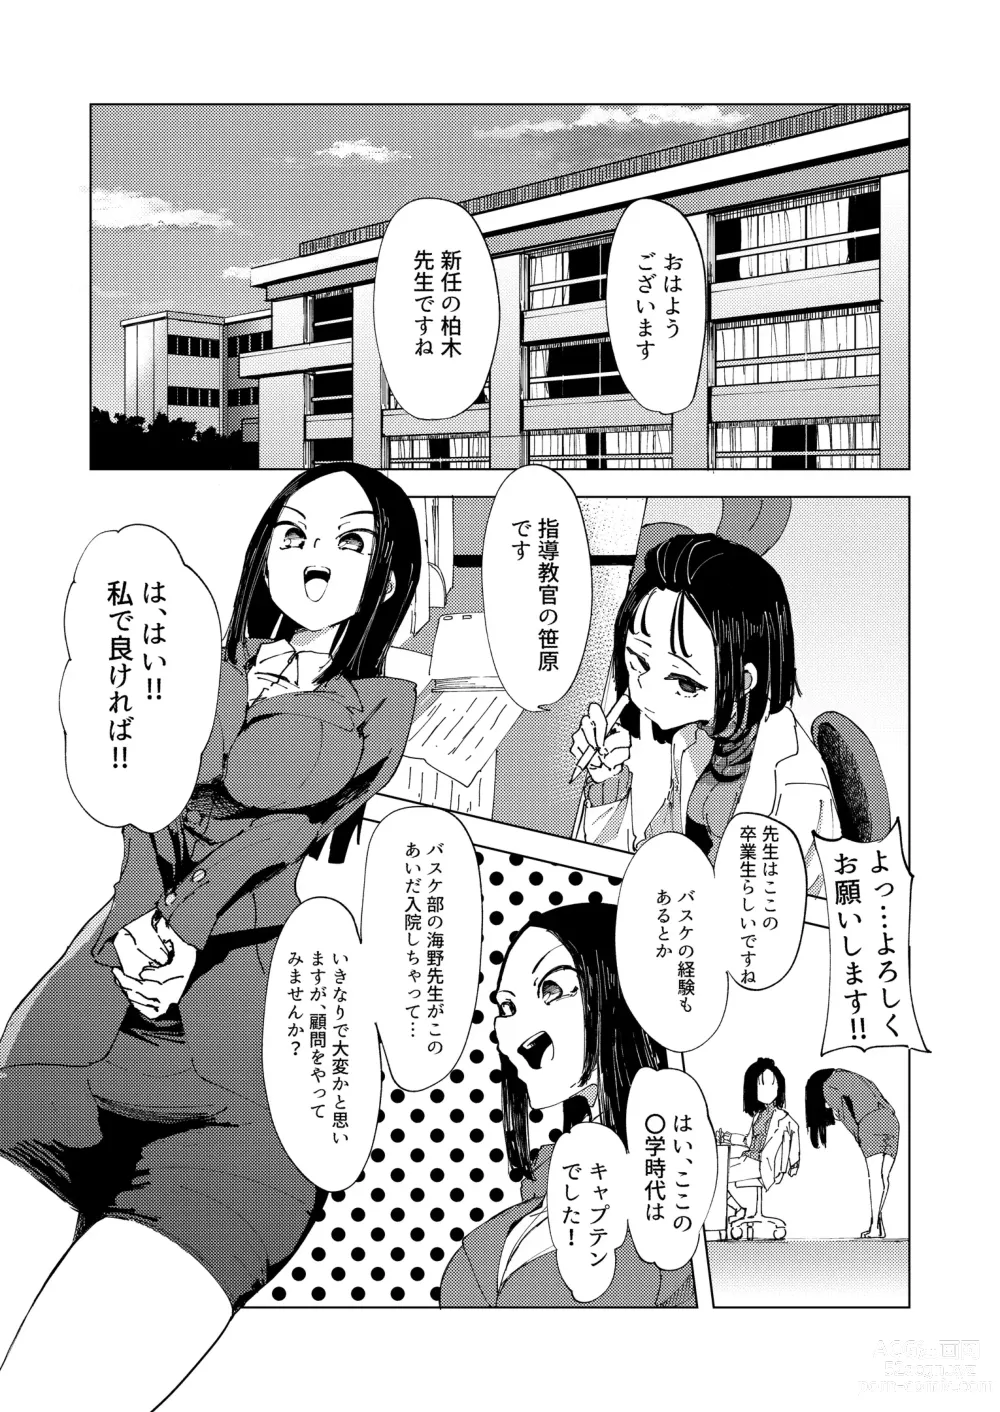 Page 2 of doujinshi Baske-bu no Shinmai Kyoushi Ijime